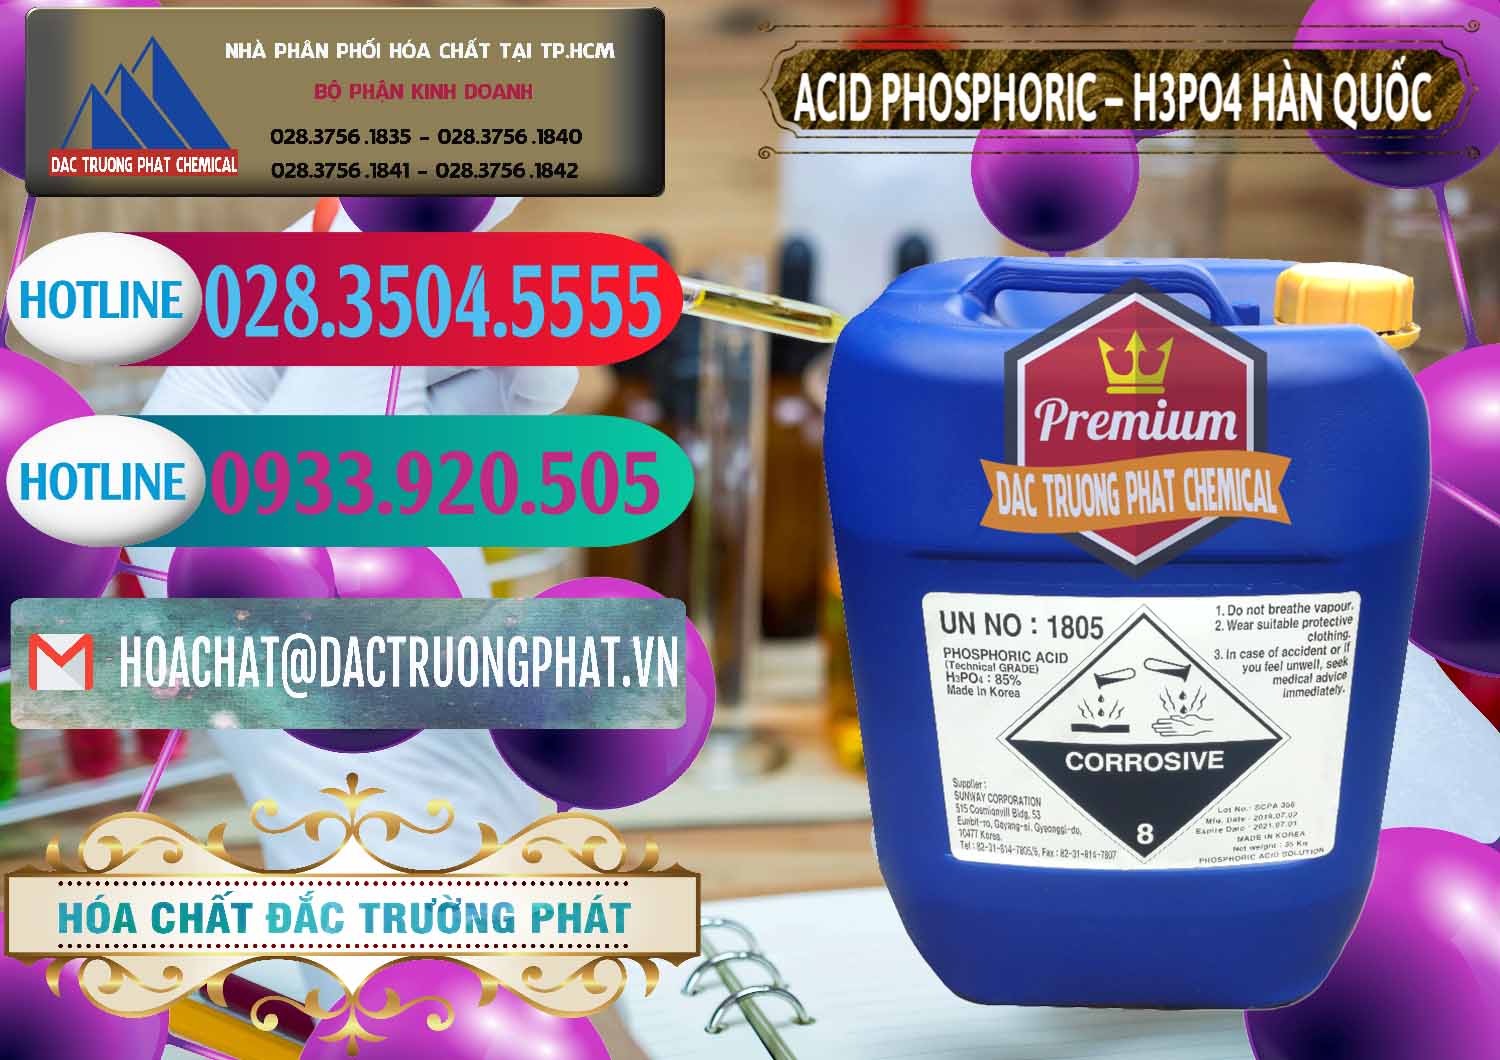 Công ty chuyên cung ứng - bán Acid Phosphoric – H3PO4 85% Can Xanh Hàn Quốc Korea - 0016 - Cty phân phối và bán hóa chất tại TP.HCM - truongphat.vn